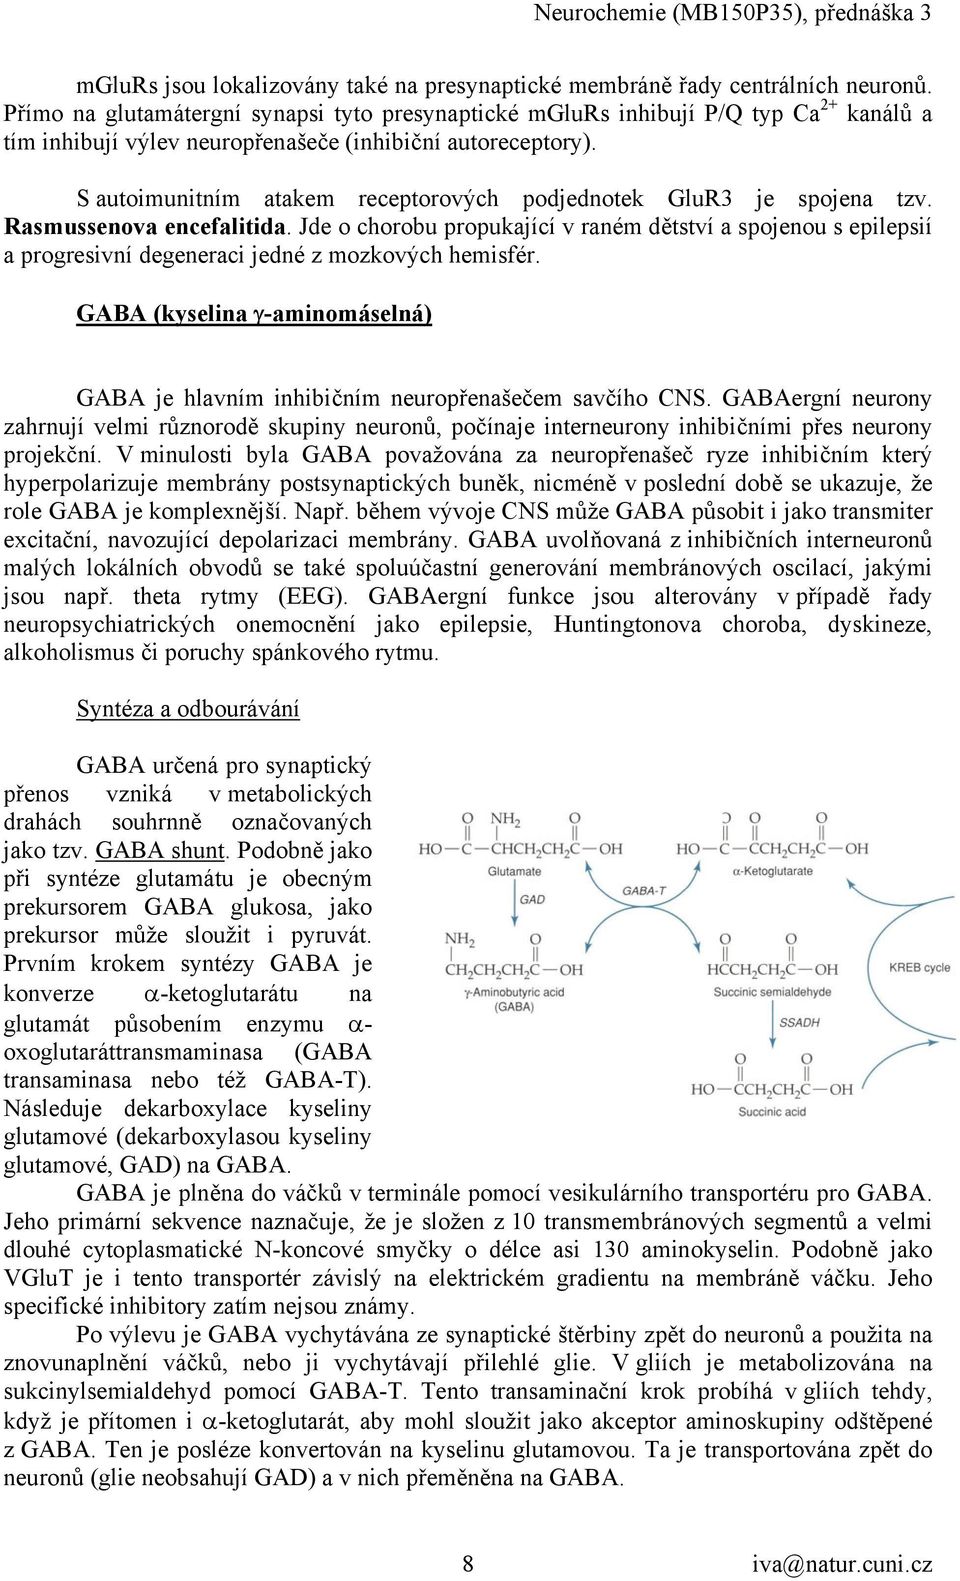 S autoimunitním atakem receptorových podjednotek GluR3 je spojena tzv. Rasmussenova encefalitida.